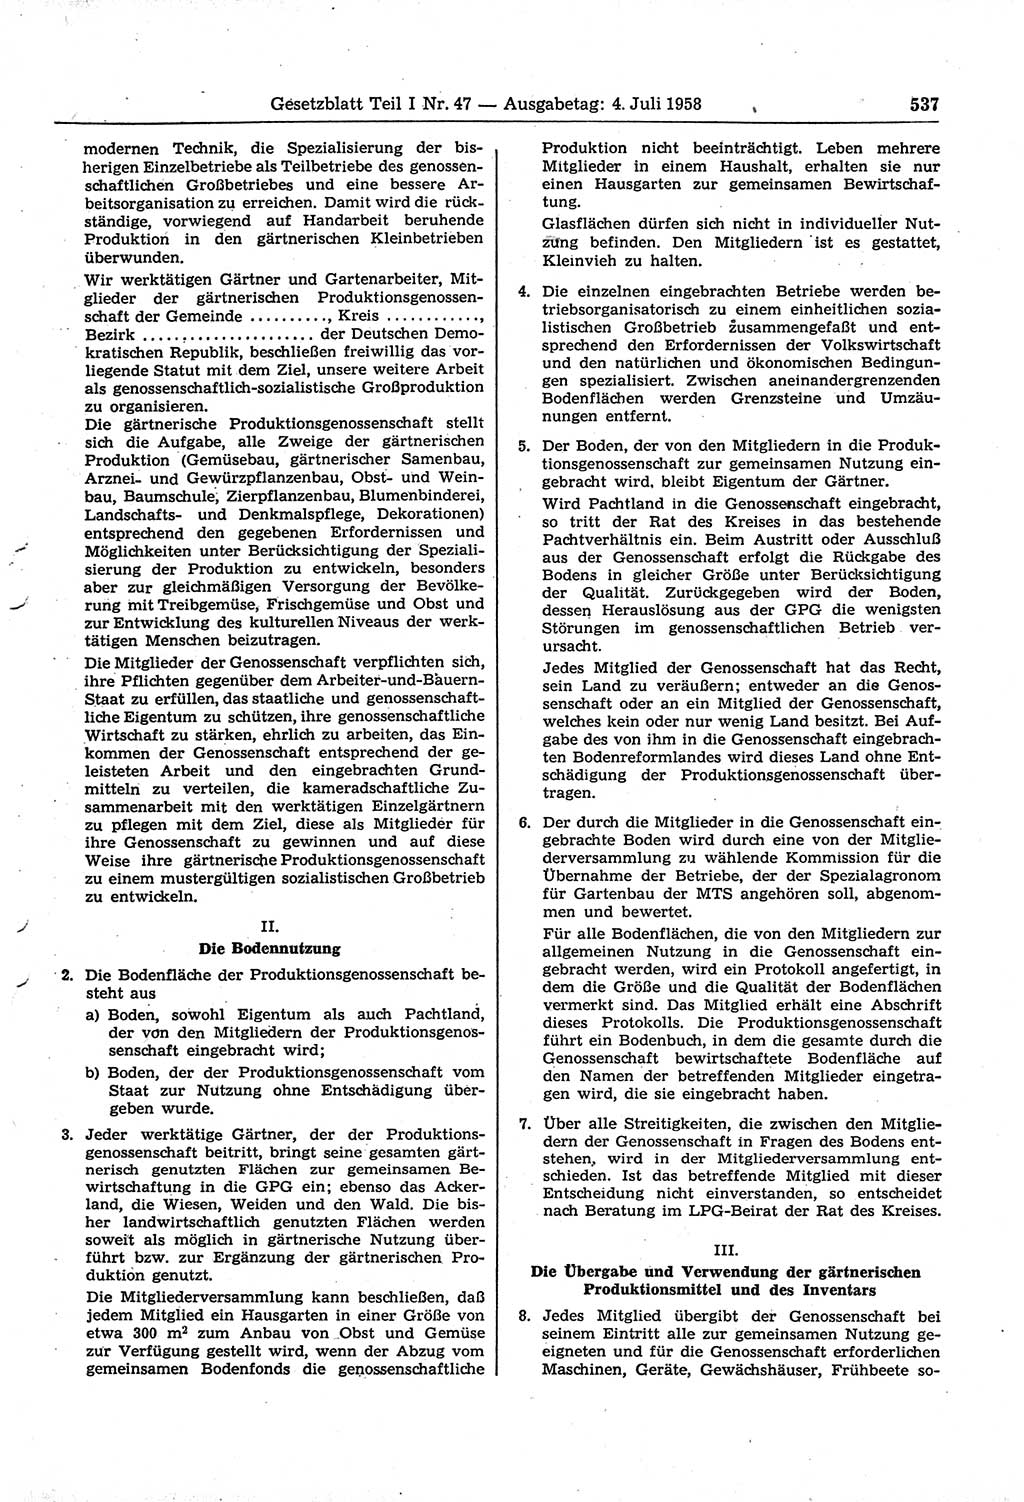 Gesetzblatt (GBl.) der Deutschen Demokratischen Republik (DDR) Teil Ⅰ 1958, Seite 537 (GBl. DDR Ⅰ 1958, S. 537)